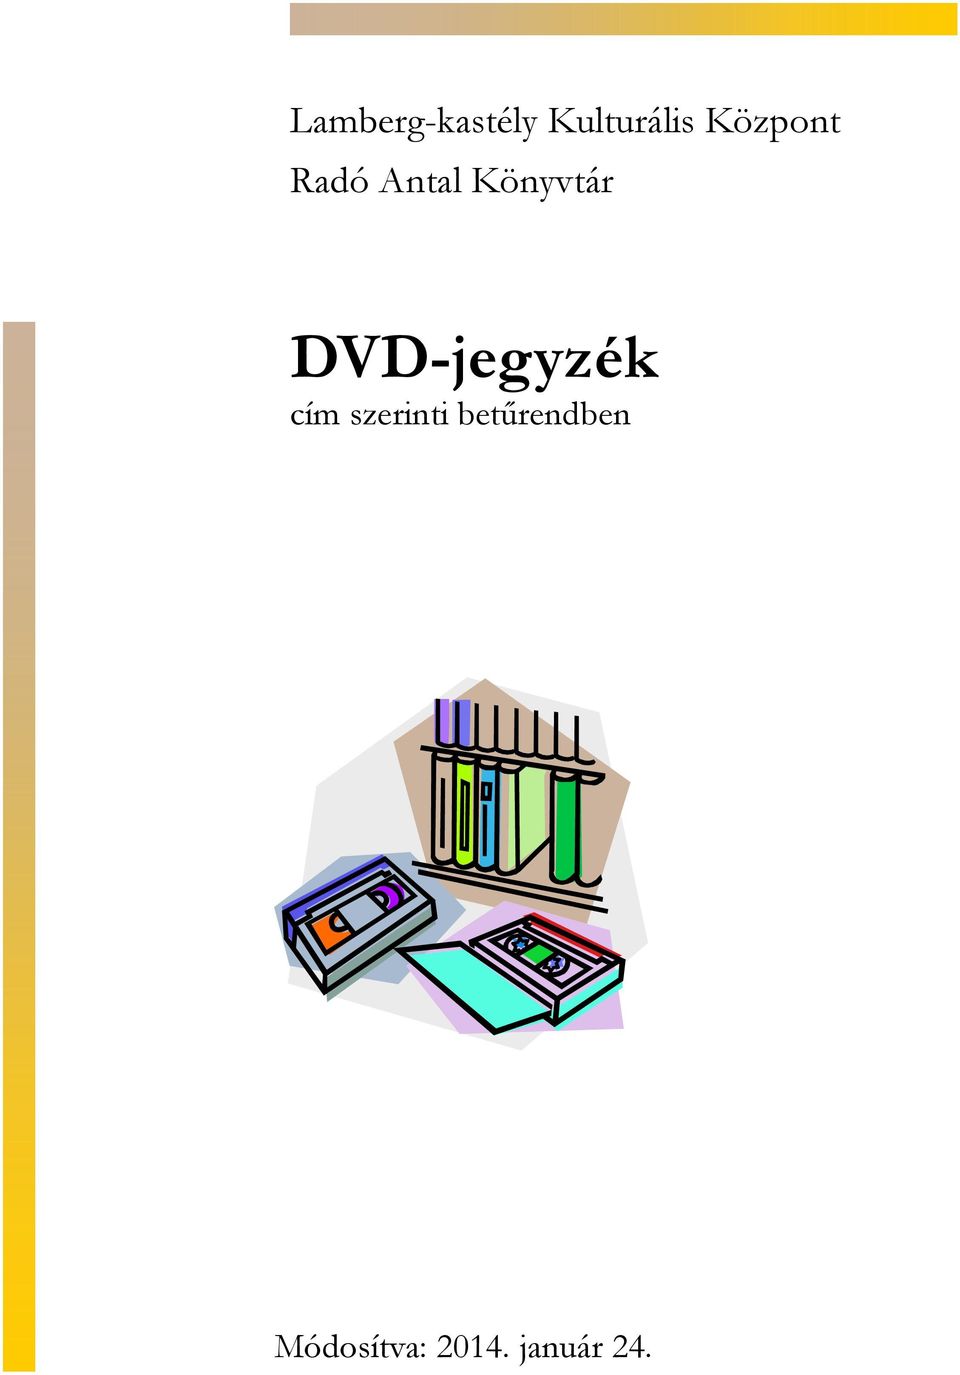 DVD-jegyzék szerinti